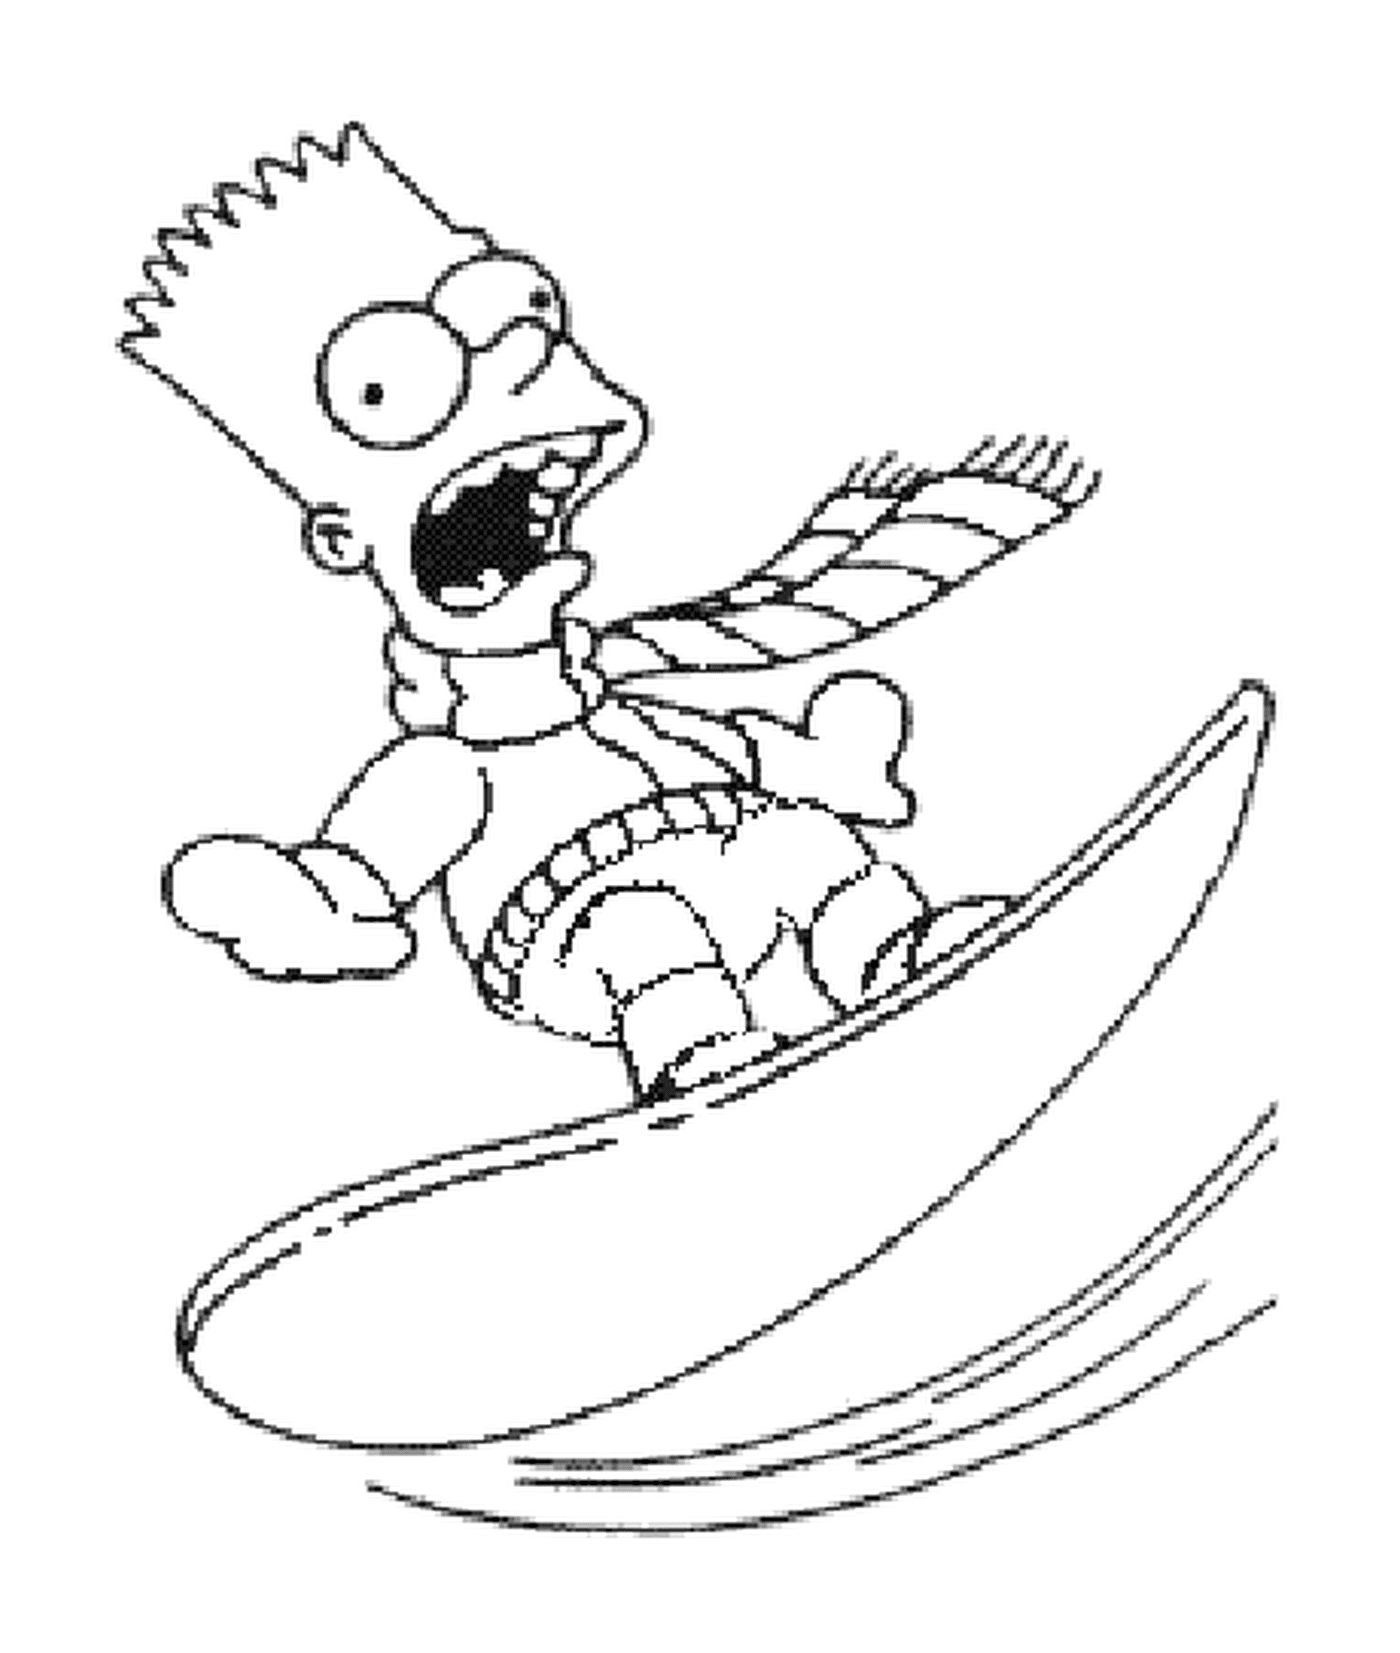  Bart surfea en la nieve 